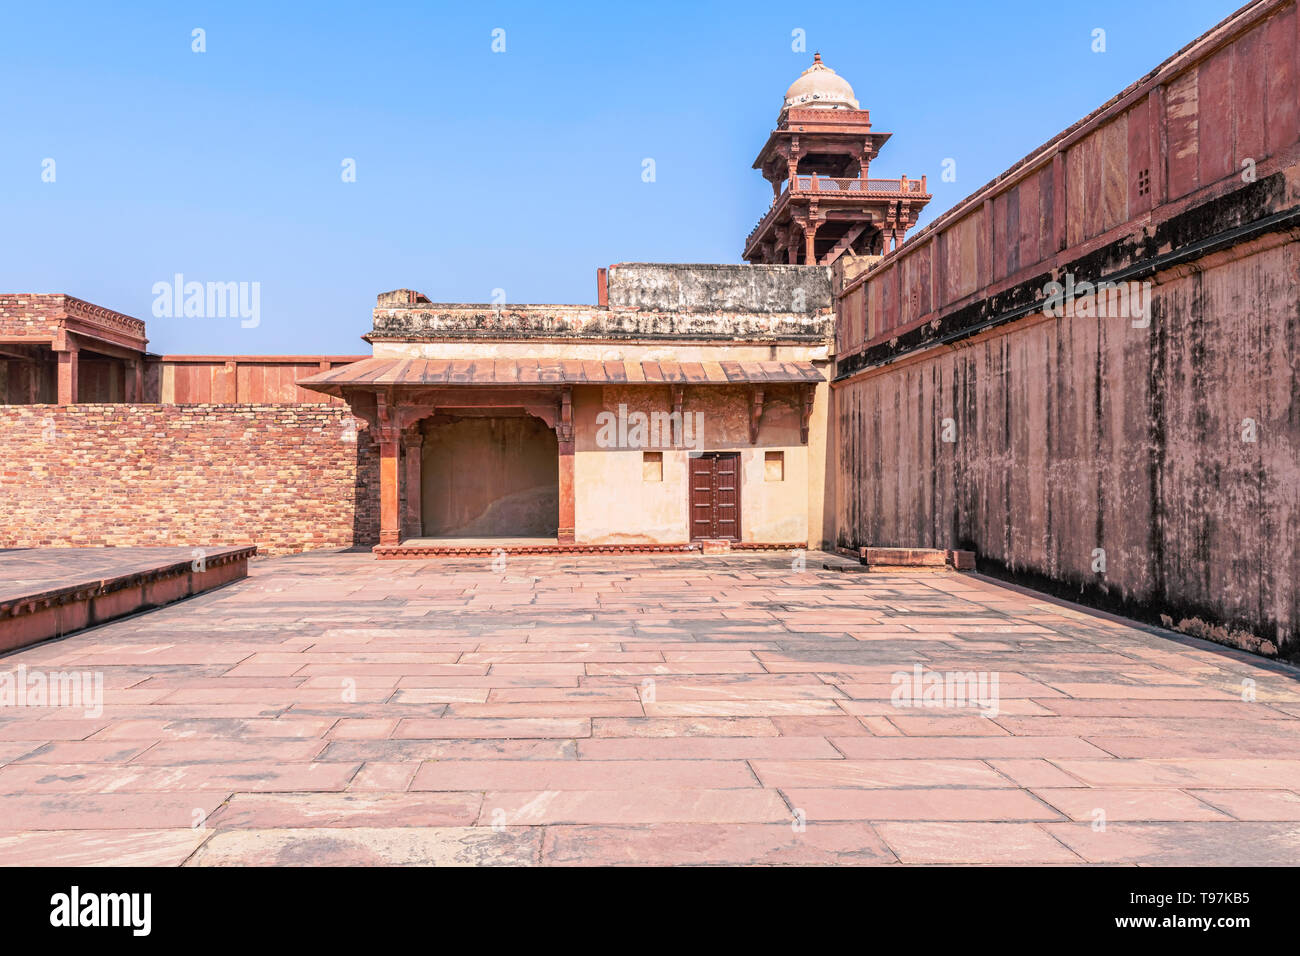 Bâtiments à Panch Mahal, Palais Royal complexe dans la ville abandonnée de Fatehpur Sikri construit par grand empereur moghol Akbar au 16e siècle, de l'Uttar Prades Banque D'Images